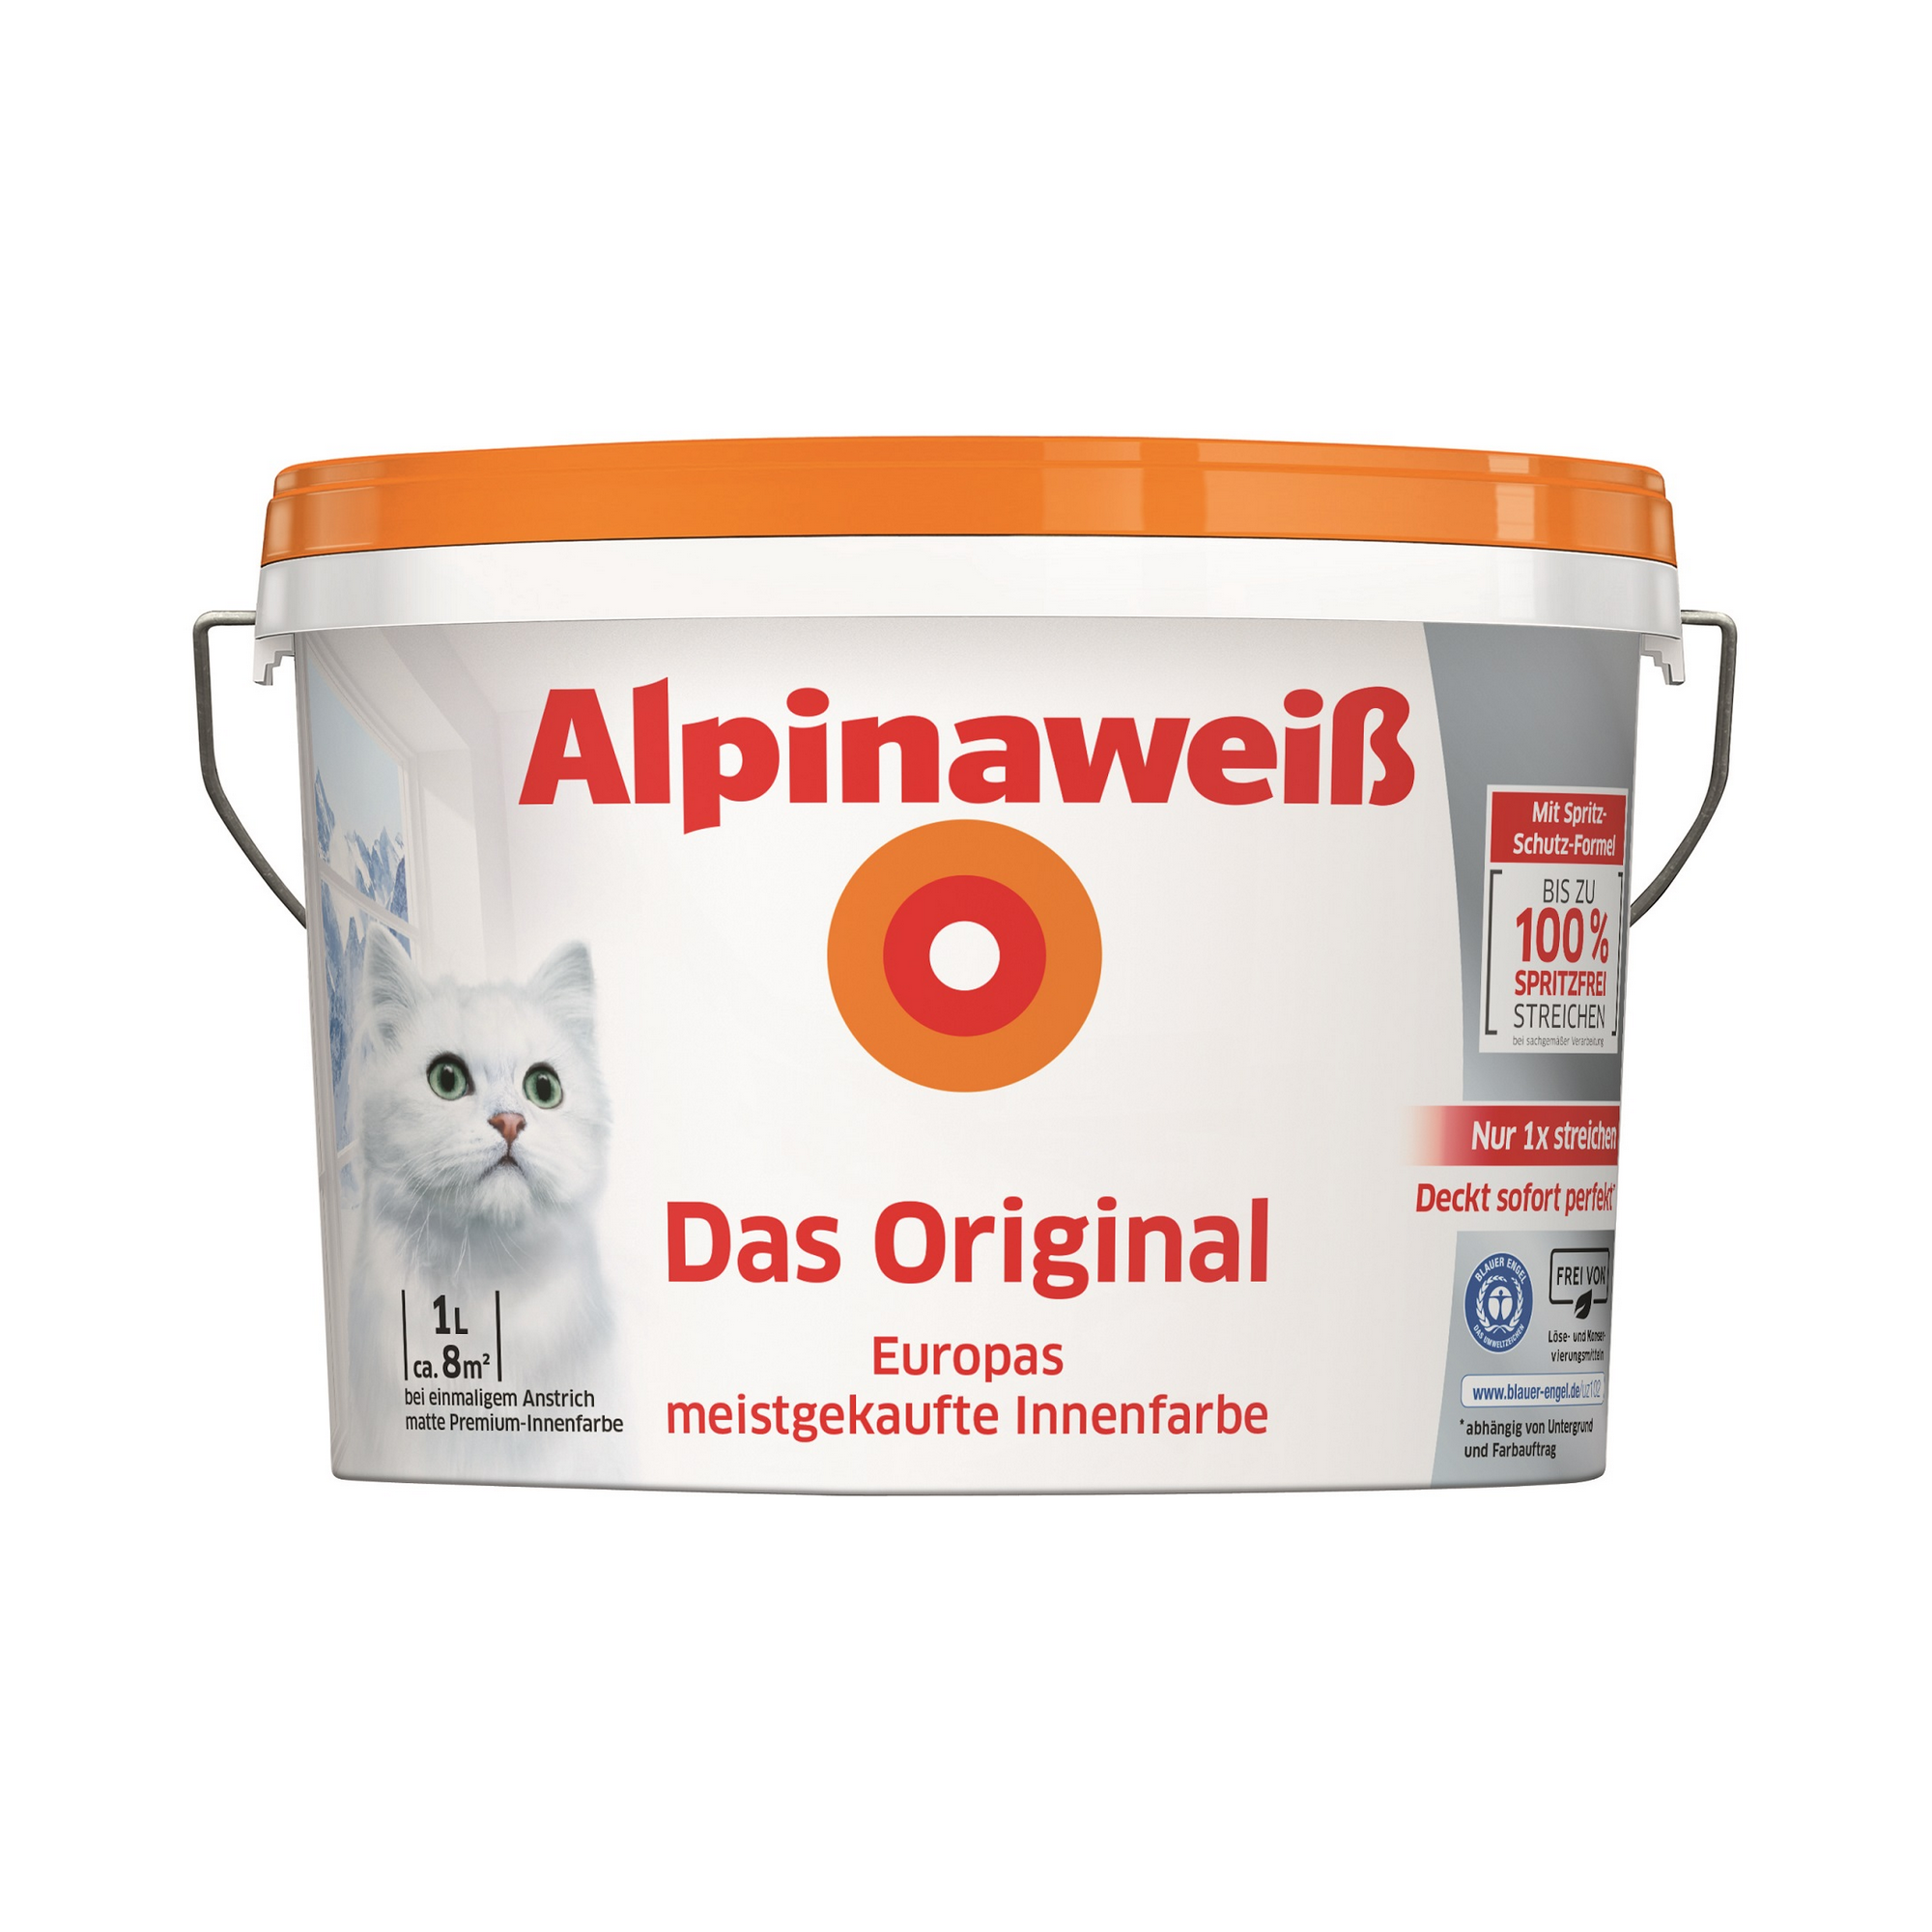 Innenfarbe 'Alpinaweiß' matt 1 l + product picture